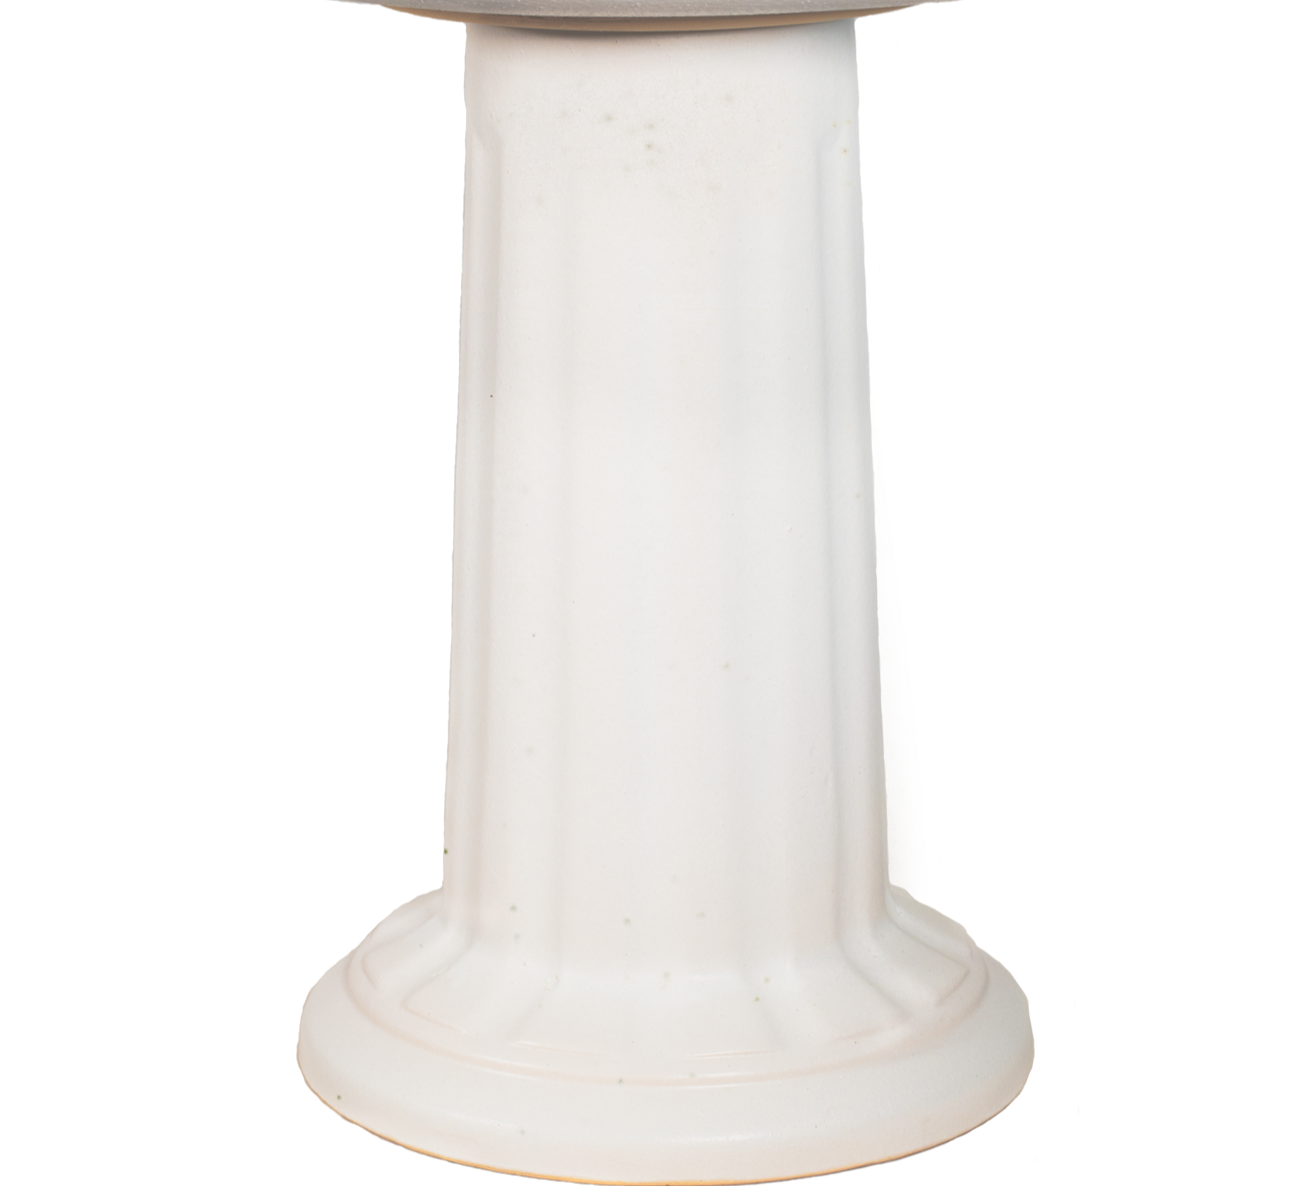 ceramic white birdbath pedestal with column design